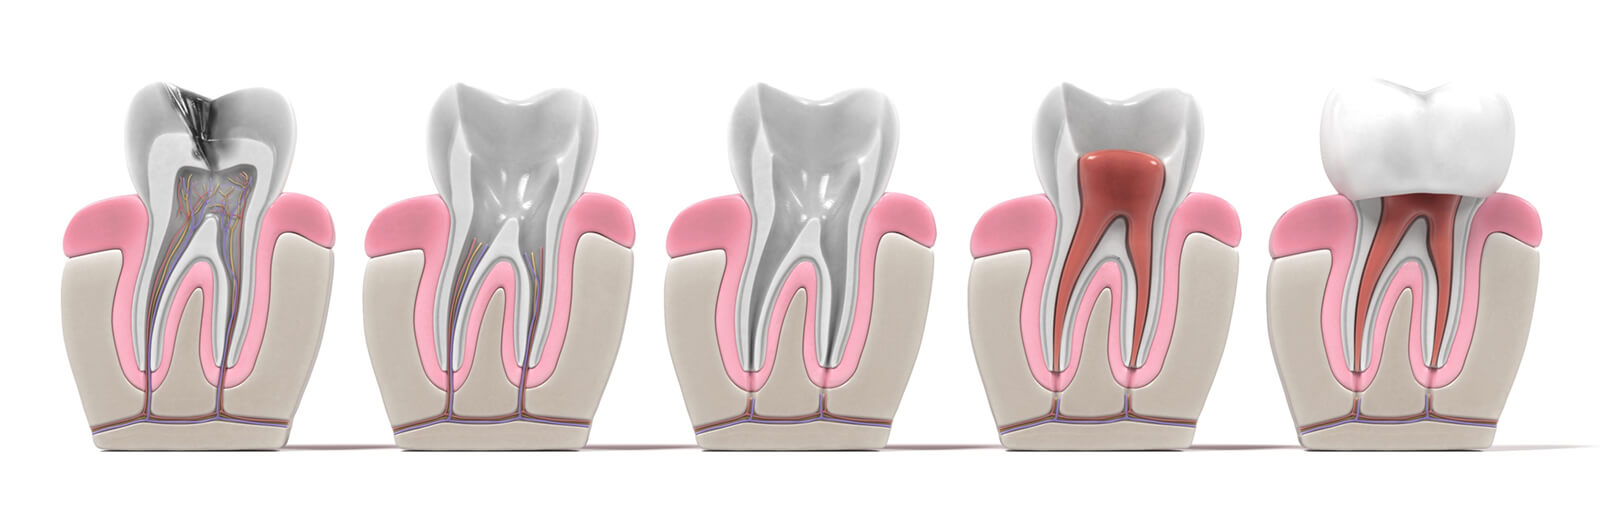 Endodontie - Step by Step